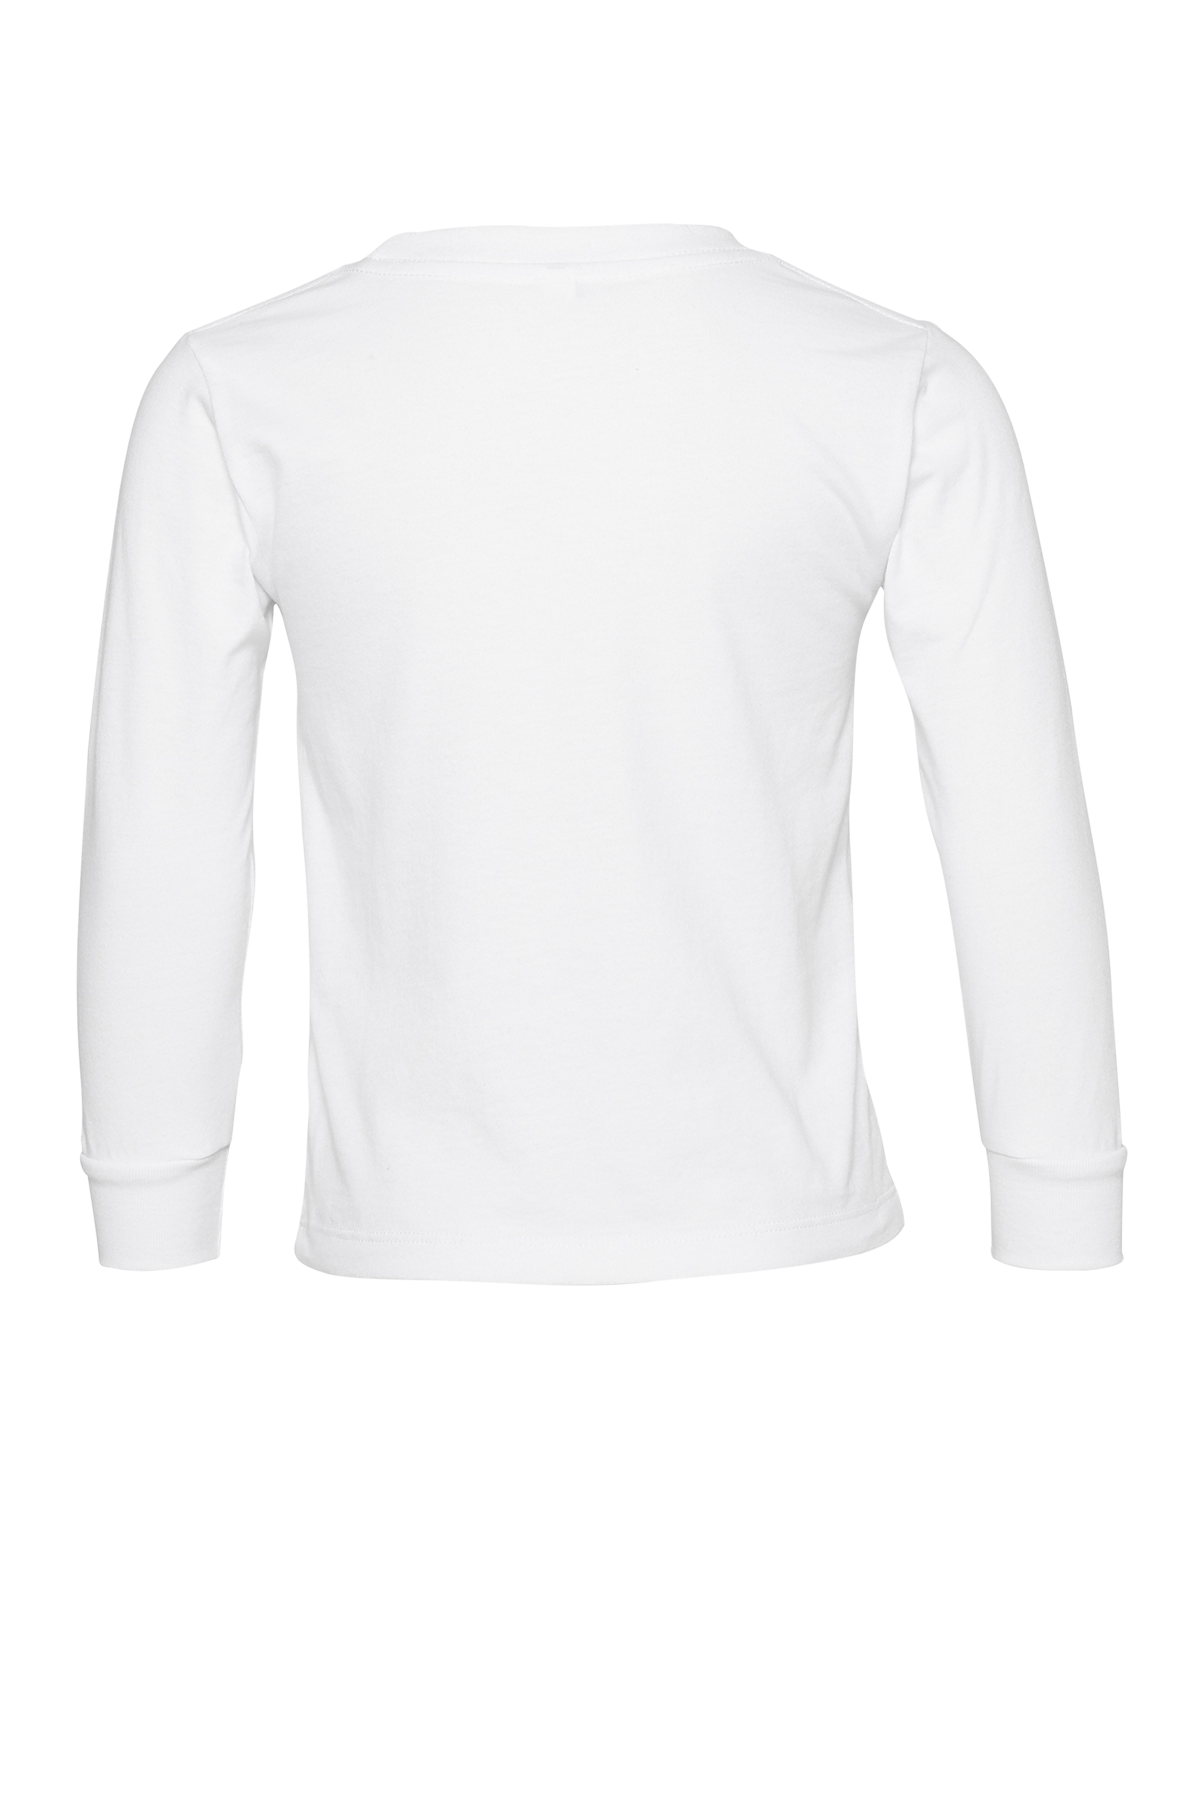 Long sleeve plain white t-shirt mockup isolated on transparent